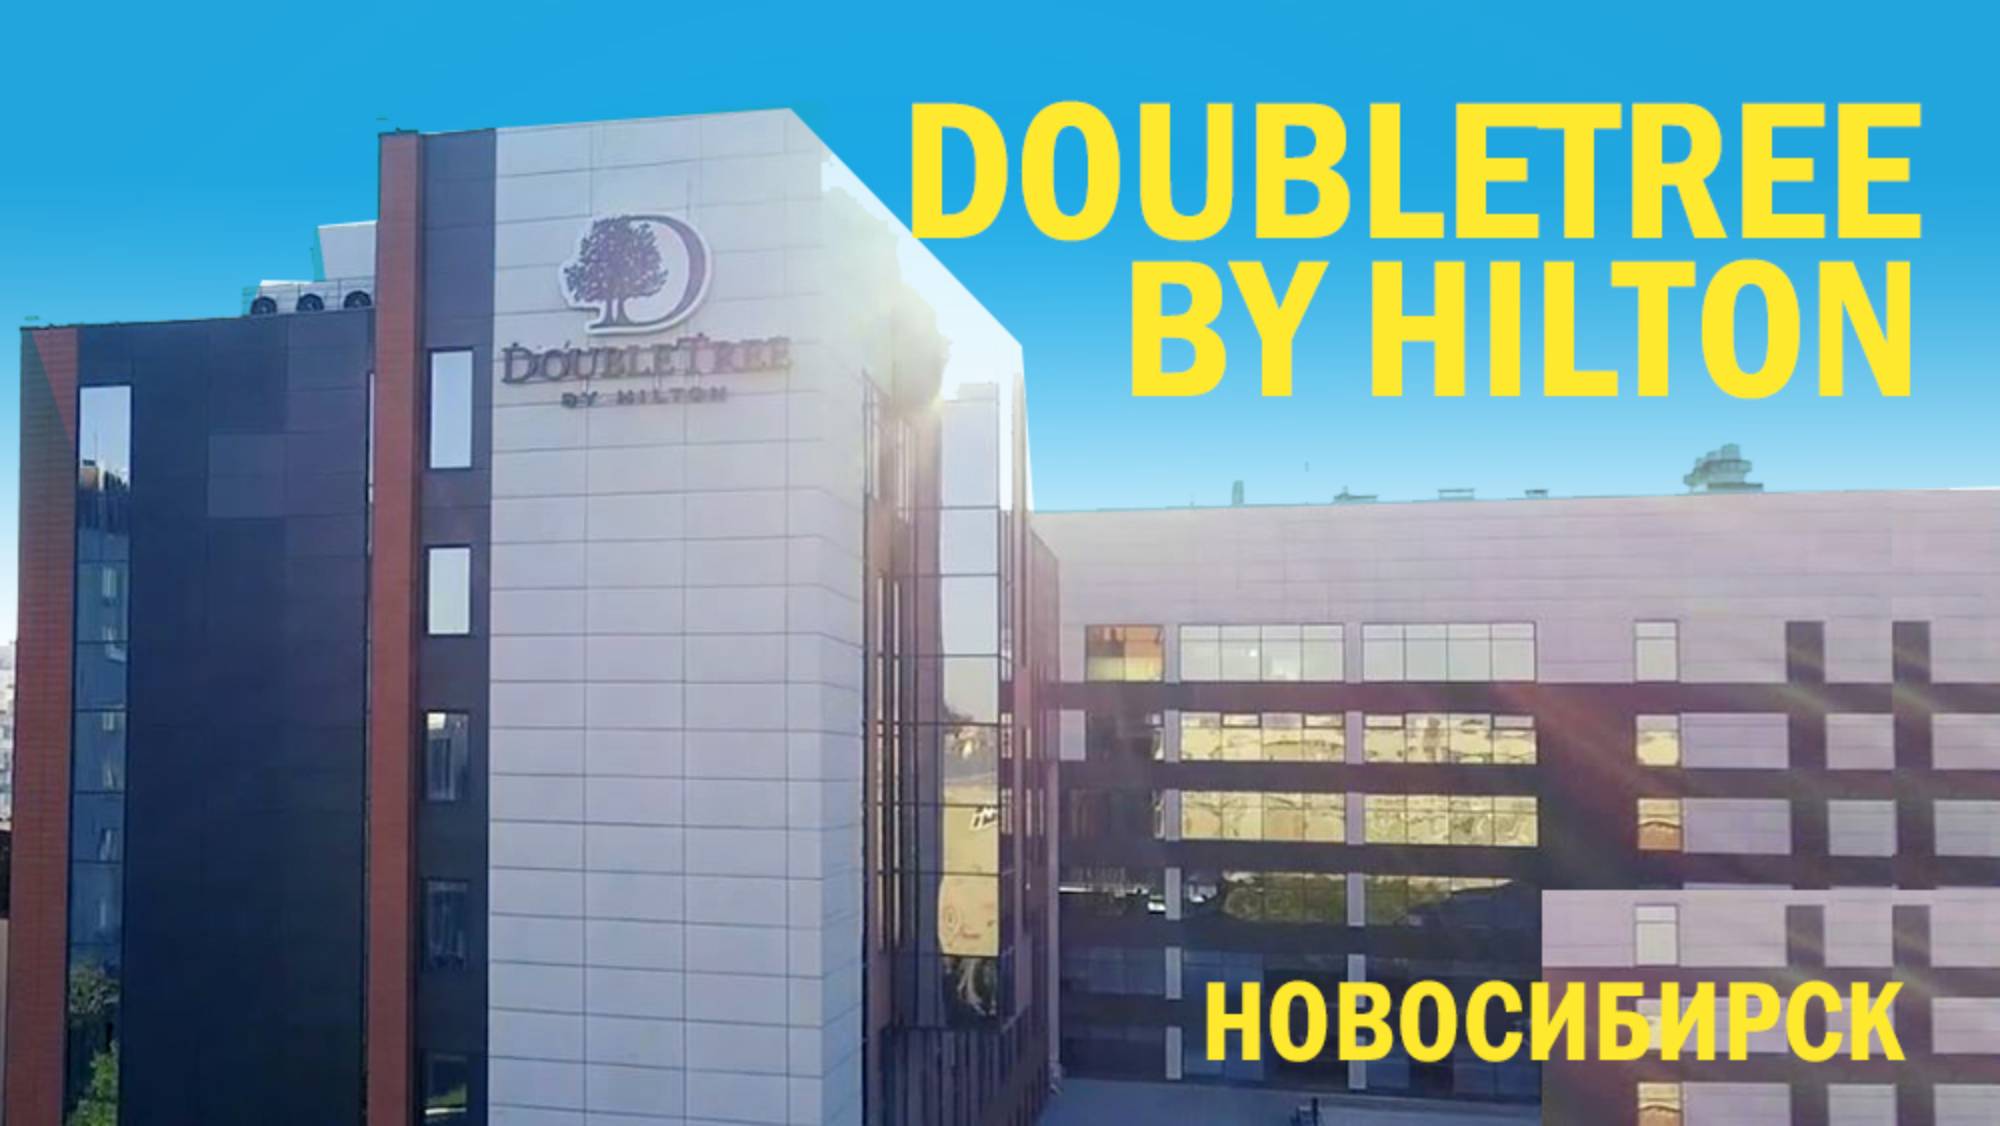 Новосибирск. DoubleTree by Hilton